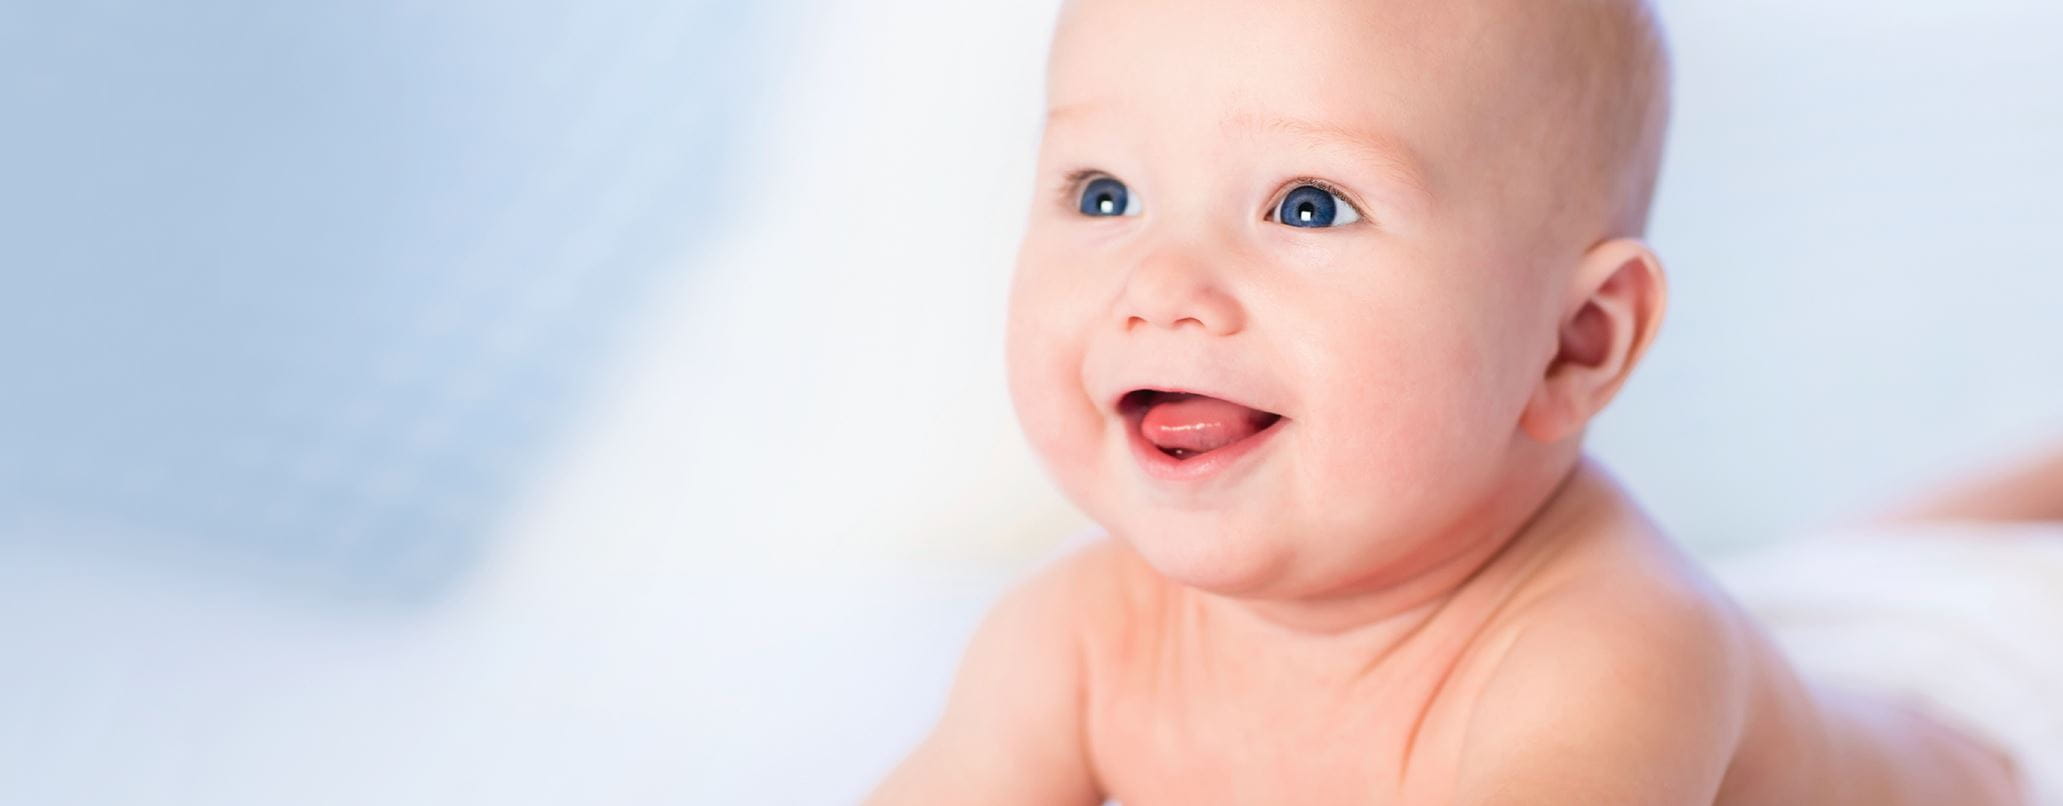 Le développement de bébé : les différentes couches de sa peau